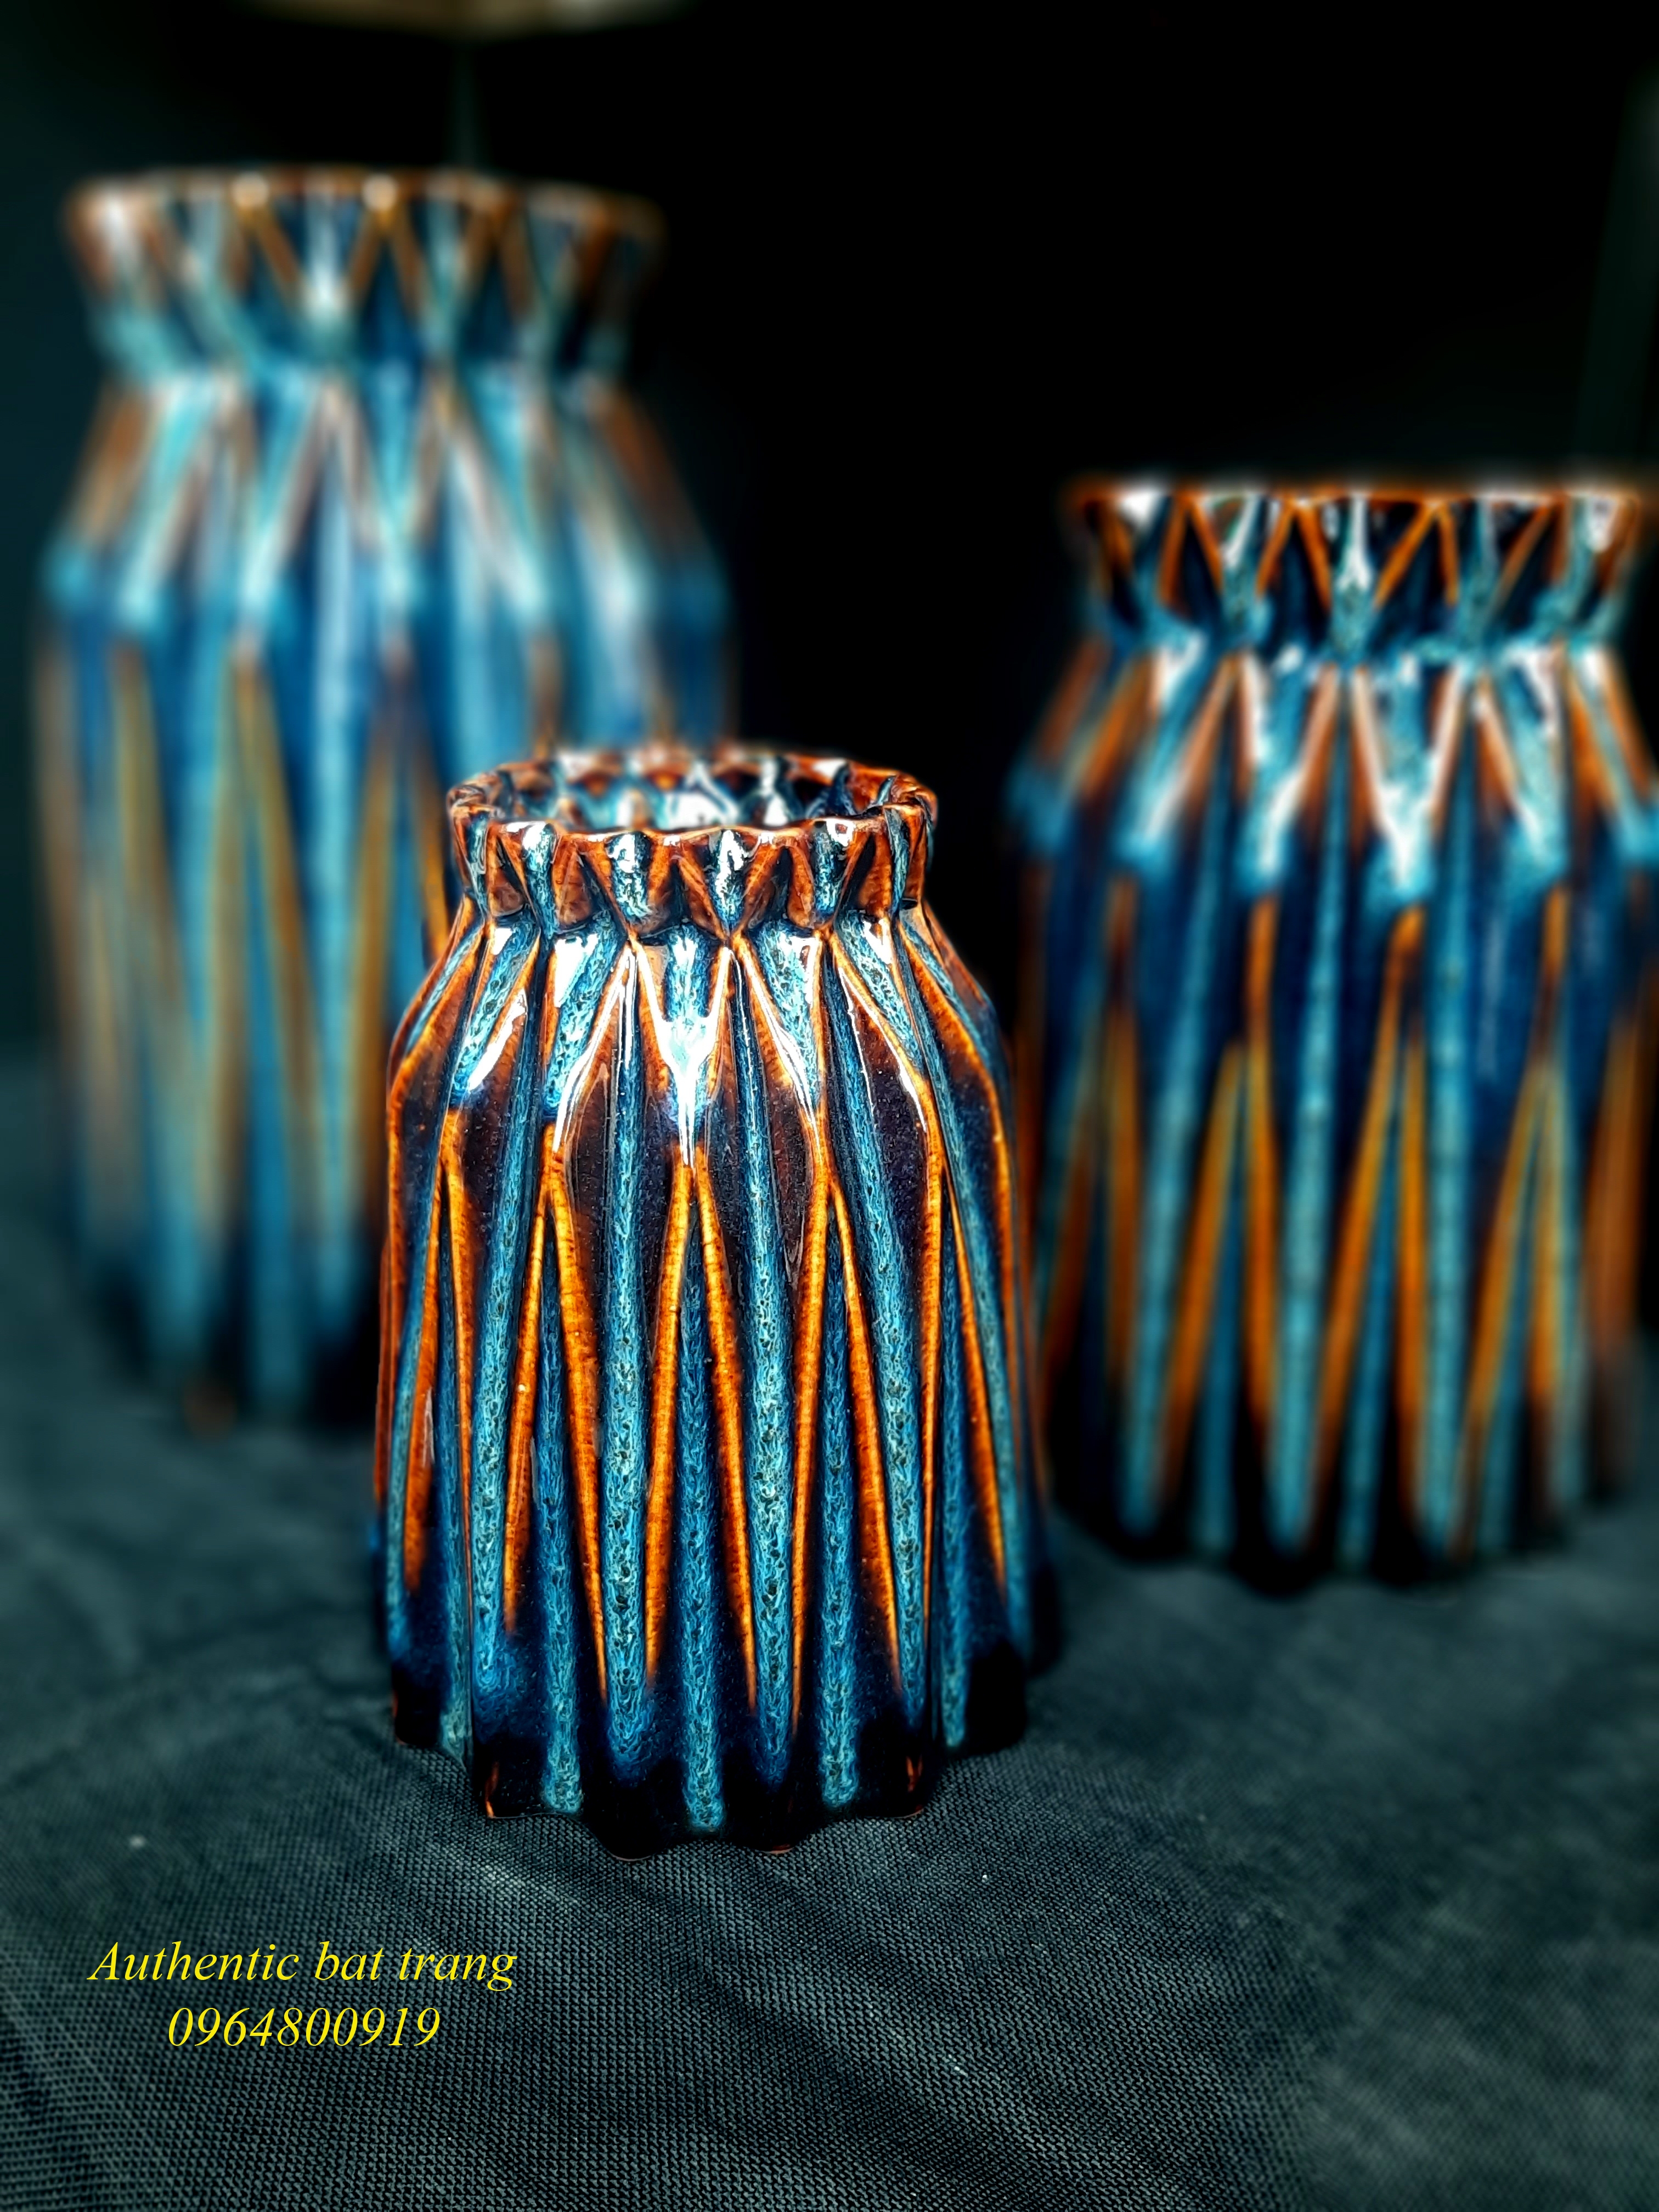 Blue decor vases set / Bộ bình thắt cổ trang trí men xanh hỏa biến sản xuất tại xưởng gốm sứ Gia Oanh Authentic bat trang